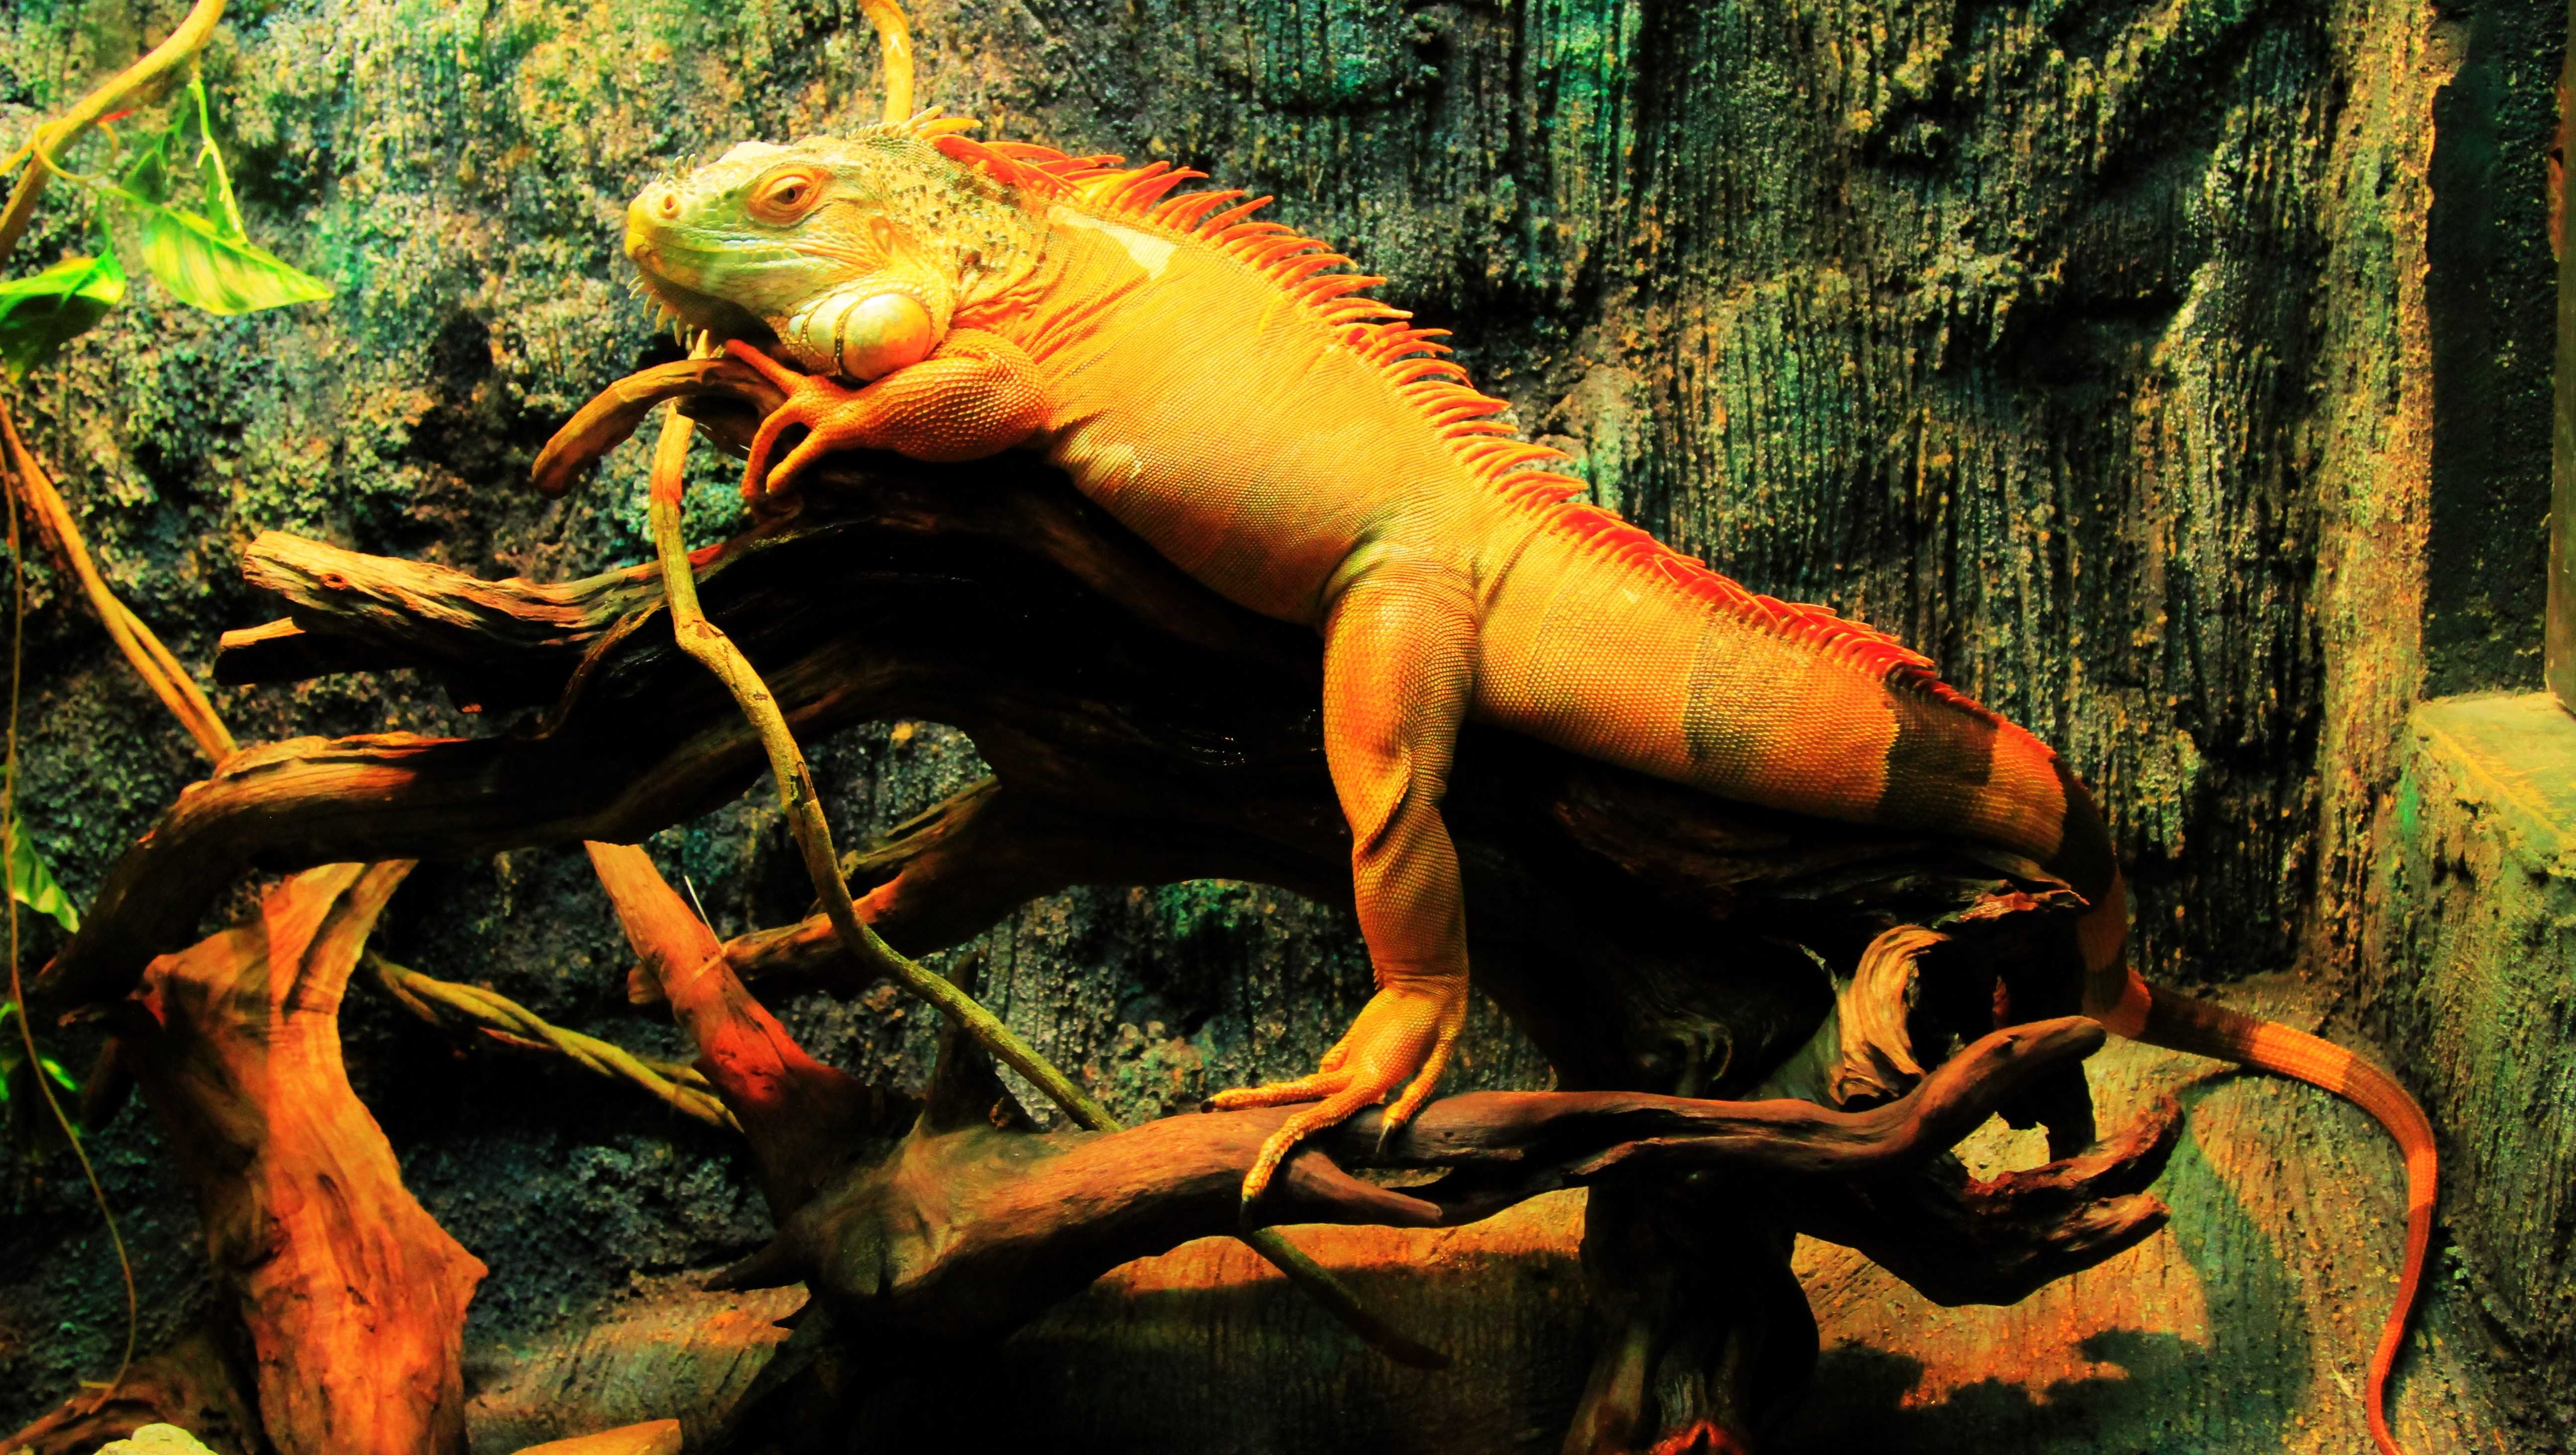 Фото обои ящерица, рептилии, ветви, животные - бесплатные картинки на Fonwall